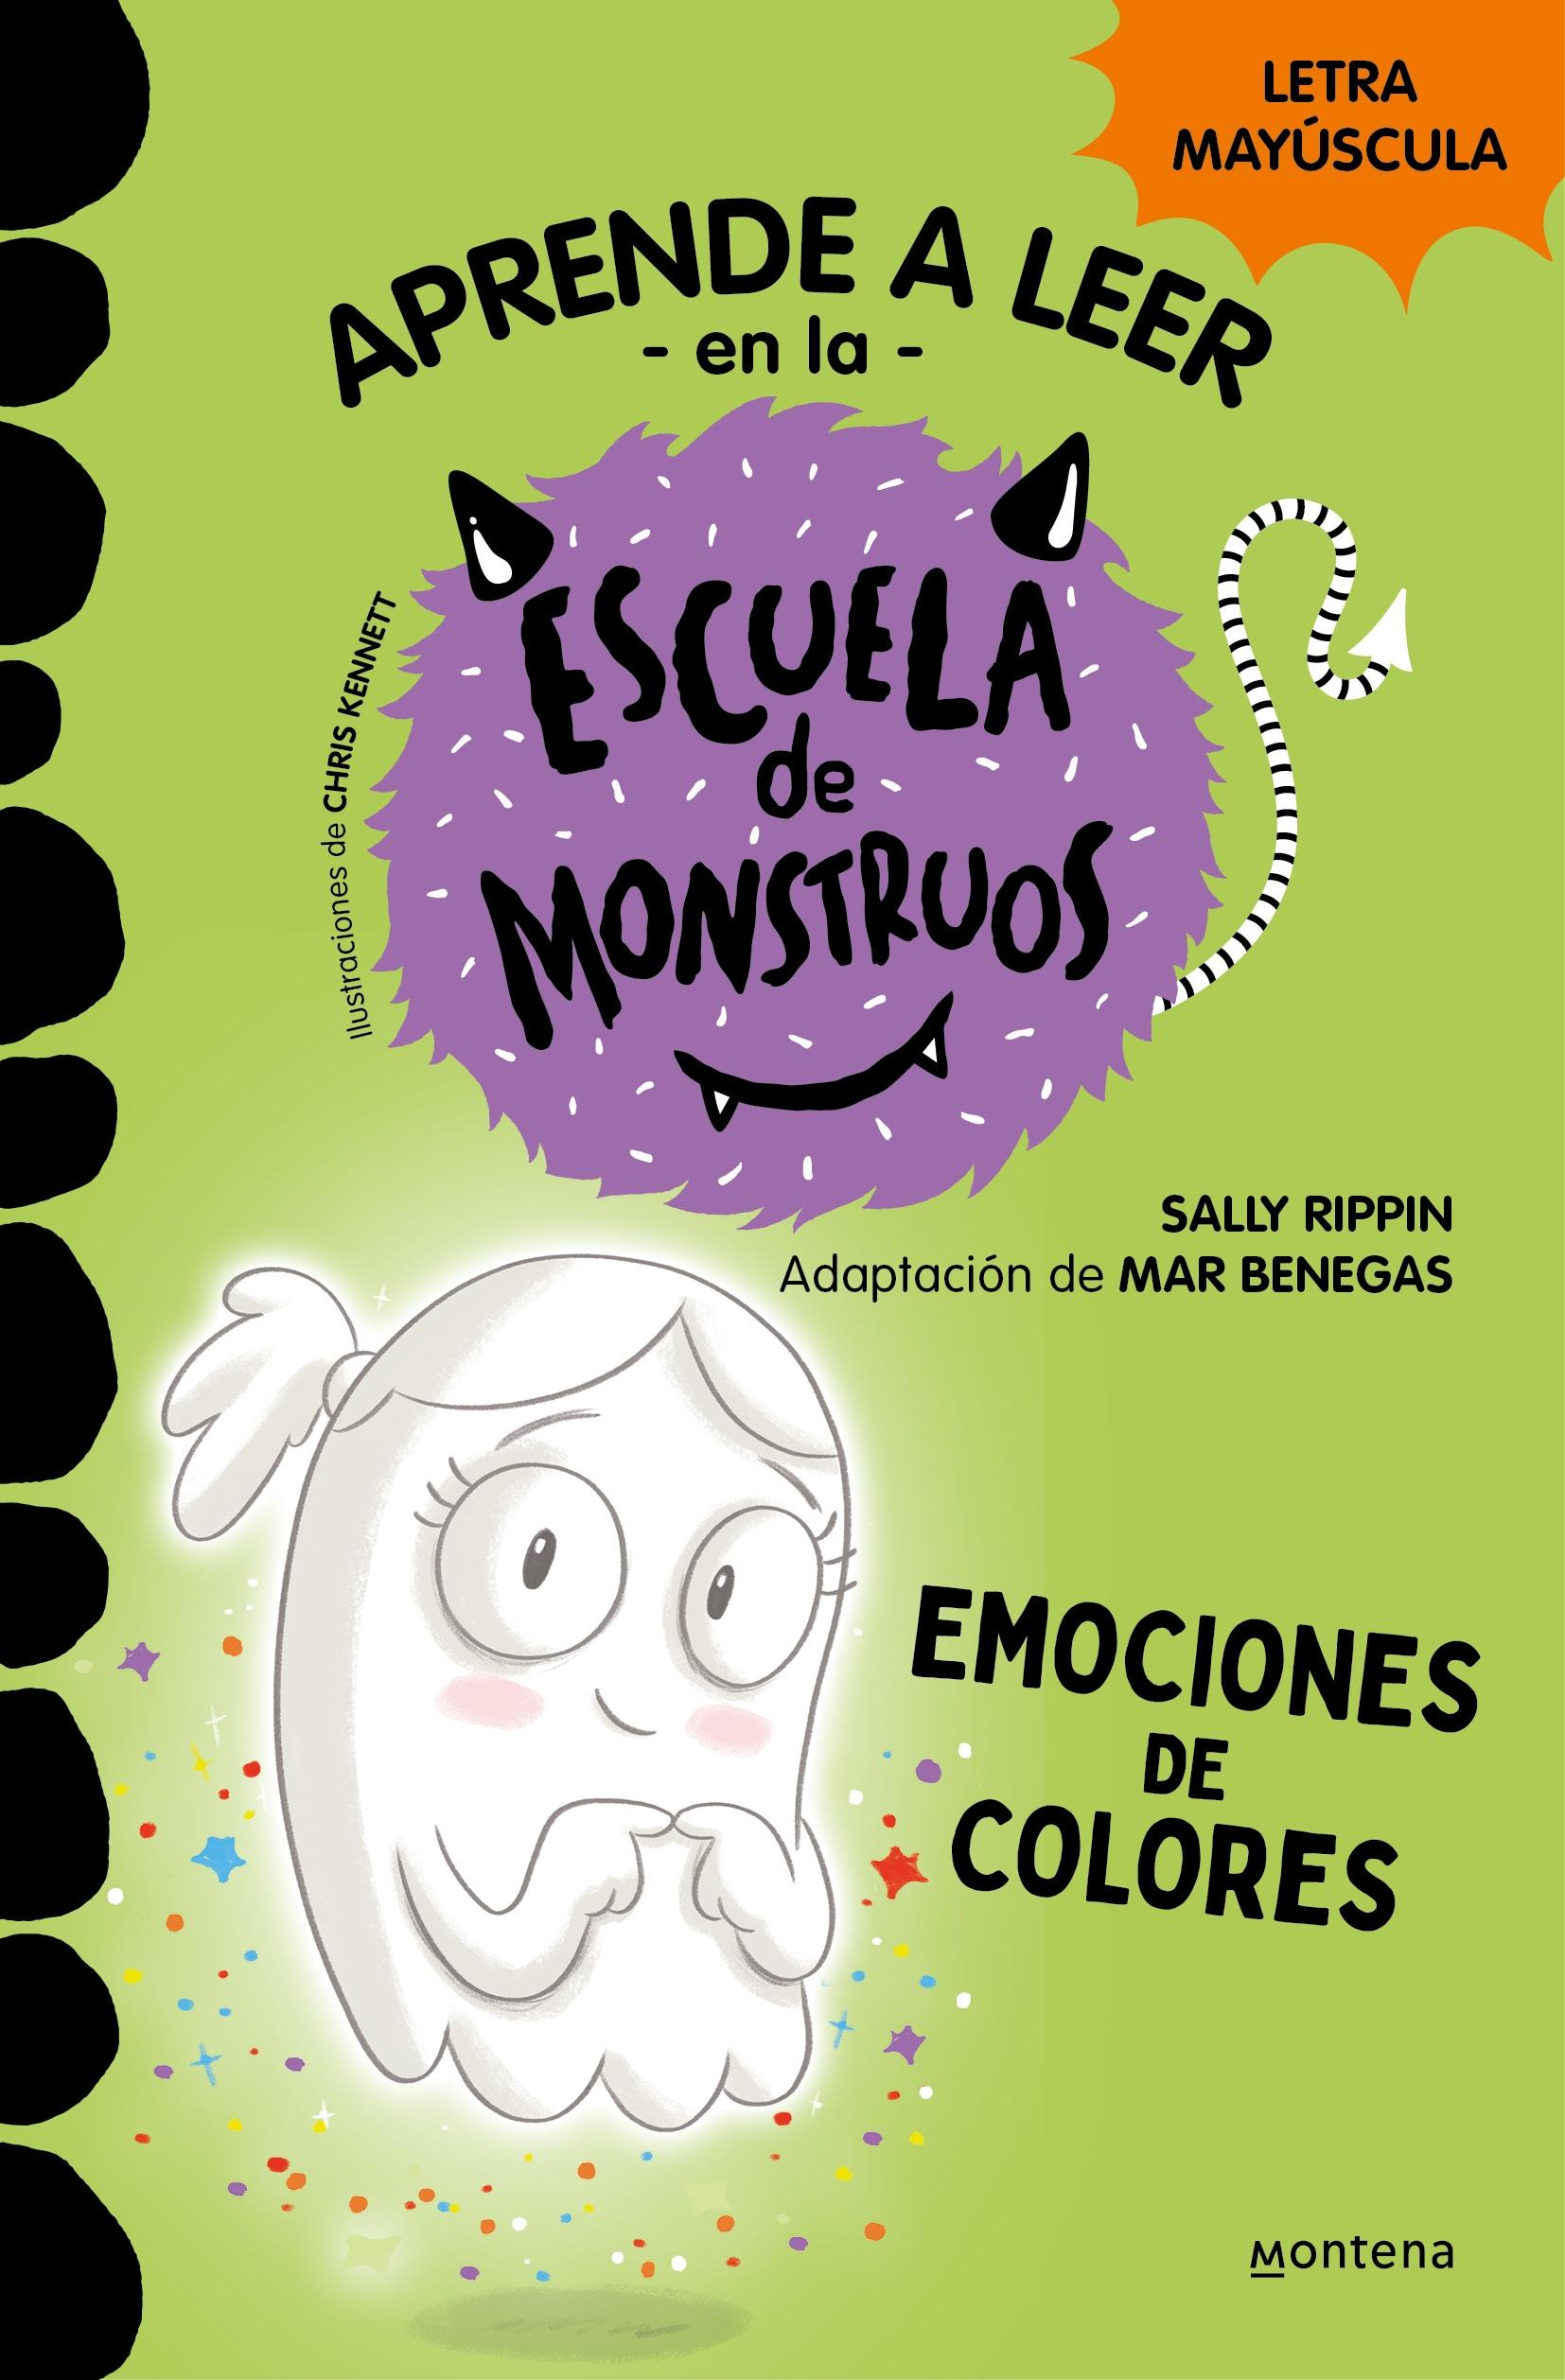 Escuela de Monstruos 8 - Emociones de Colores "Mayúsculas"